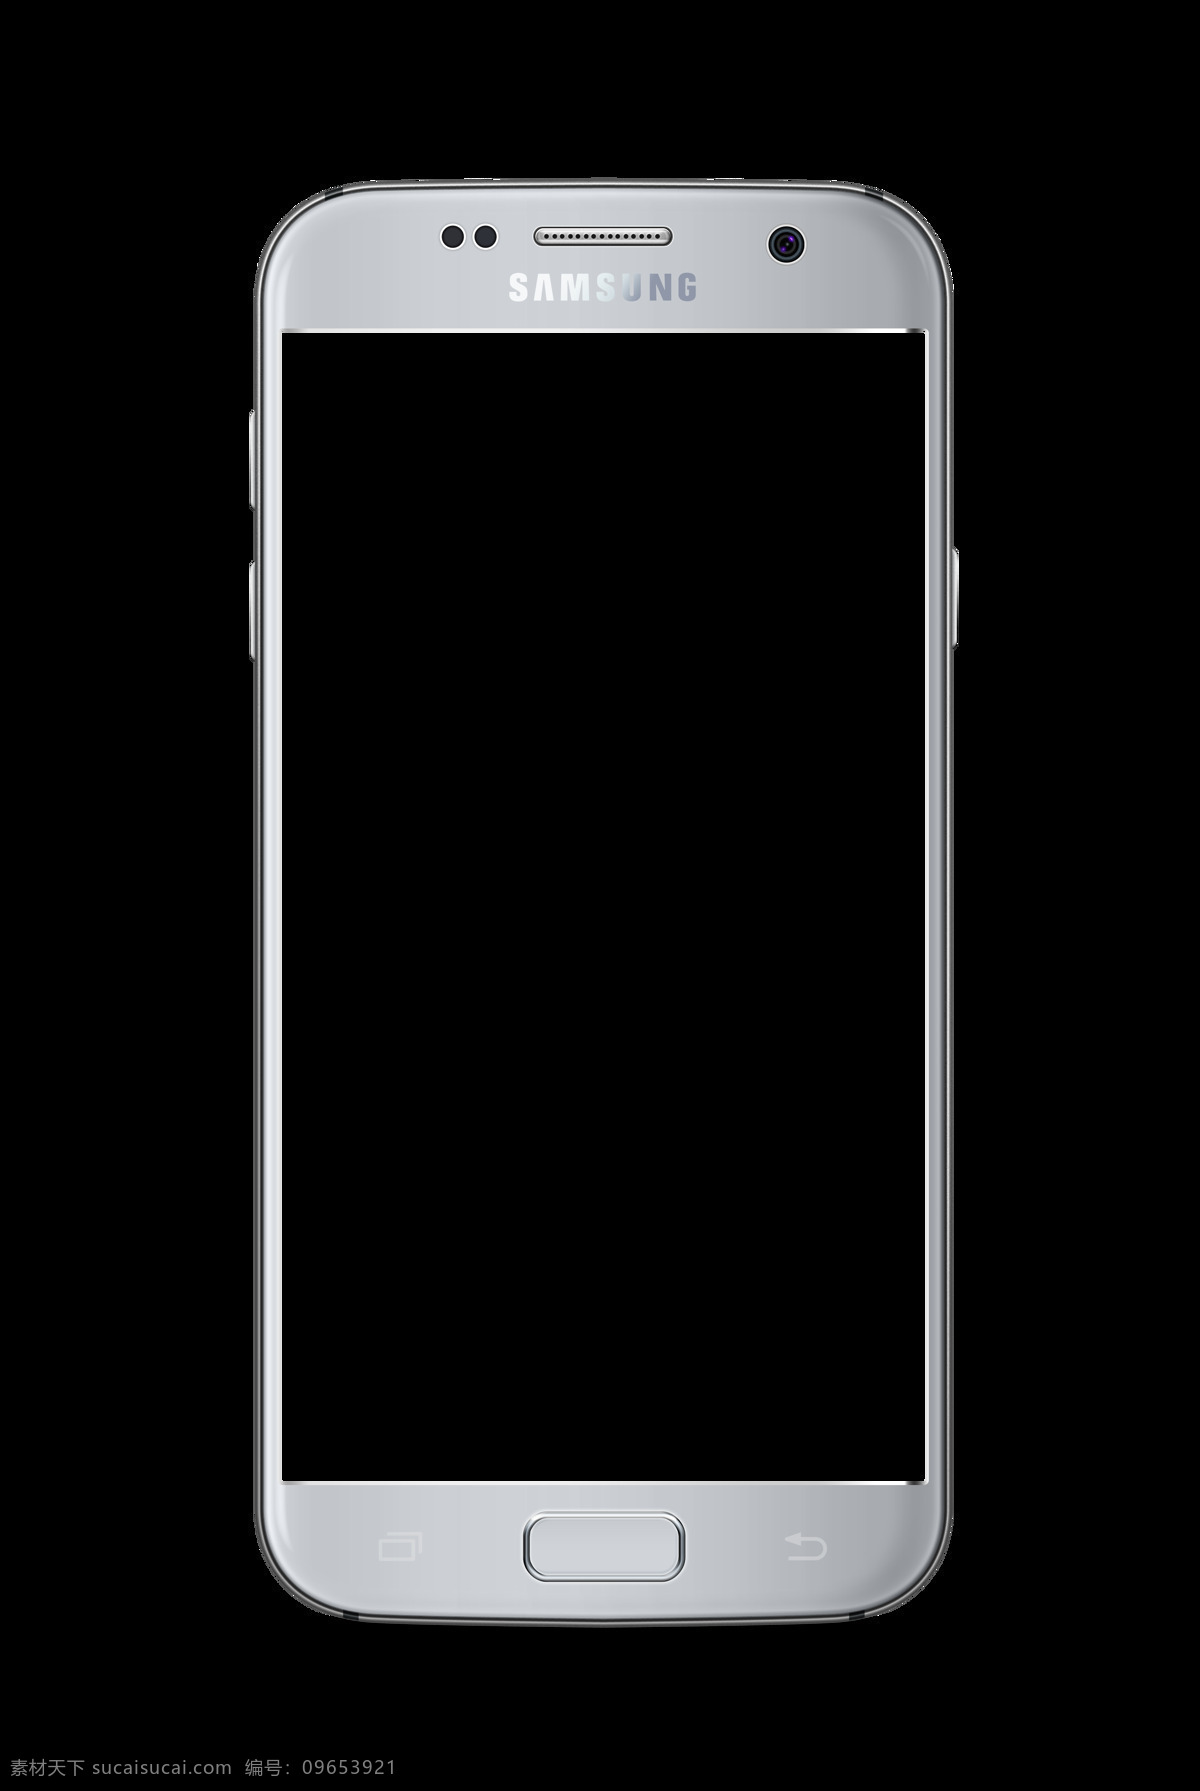 三星手机 白色 界面 样机 模板 现代科技 数码产品